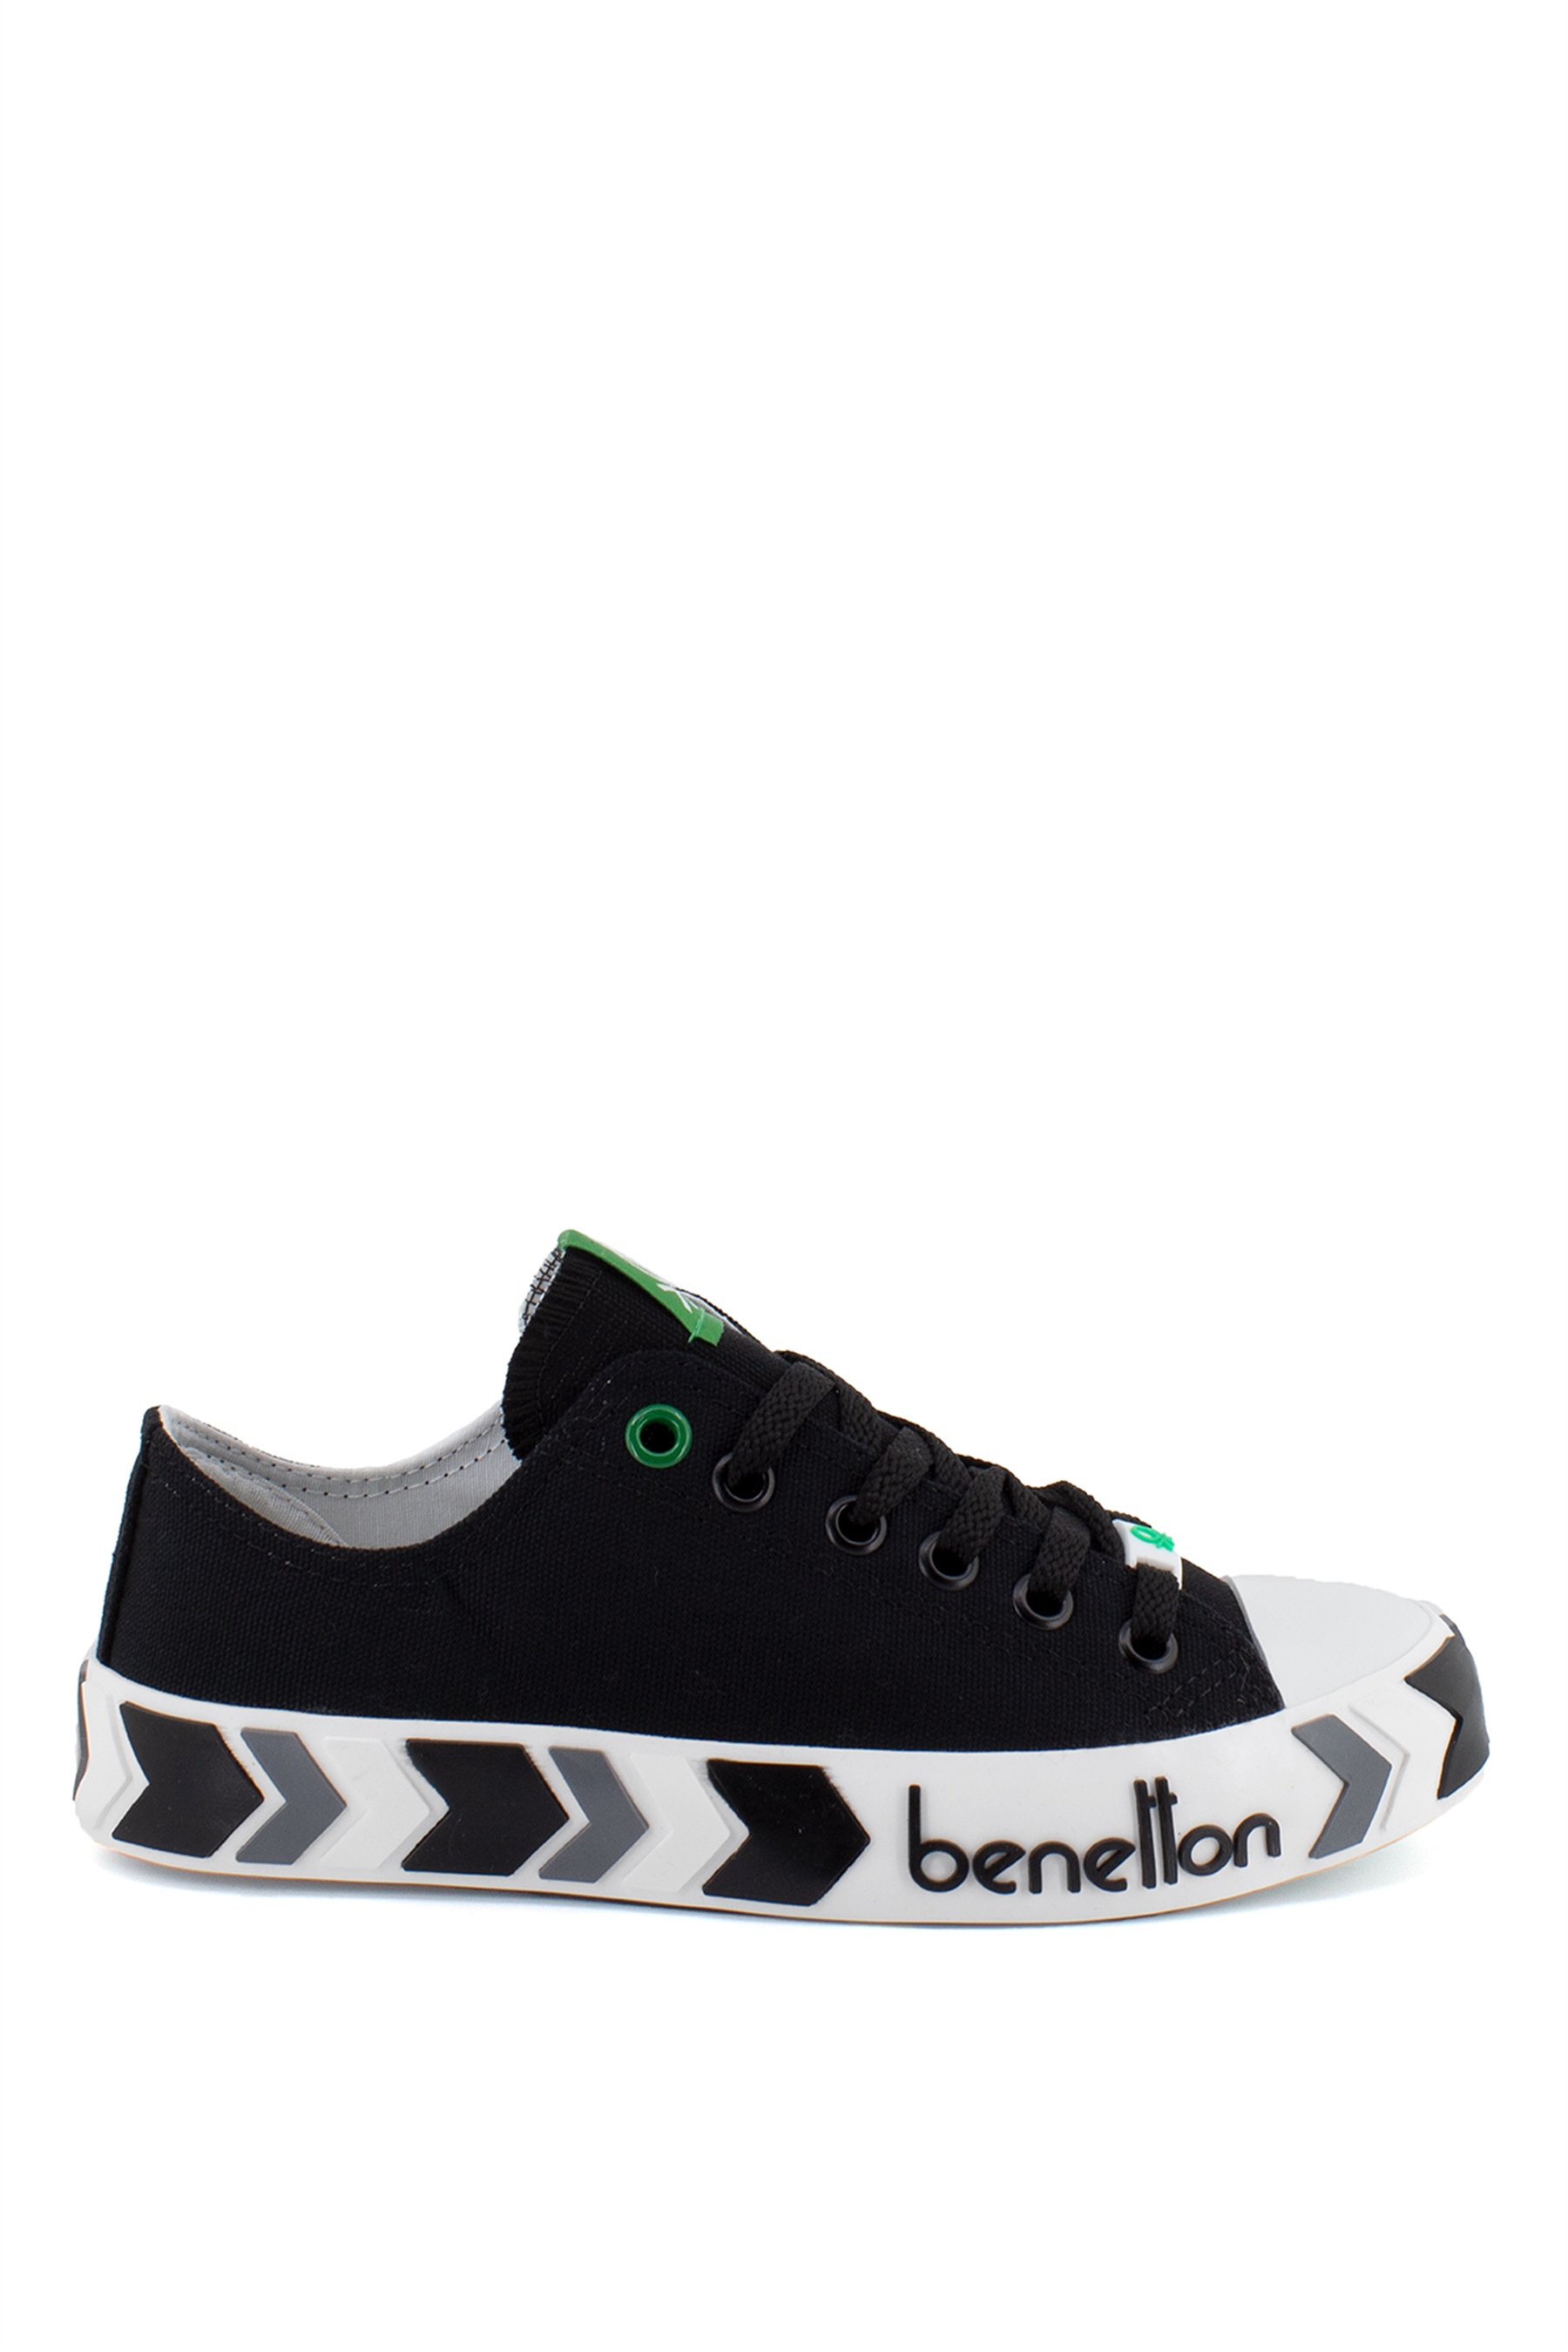 Benetton BN-30620K Kadın Spor Ayakkabı Siyah - Ayakkabı Fuarı Elit